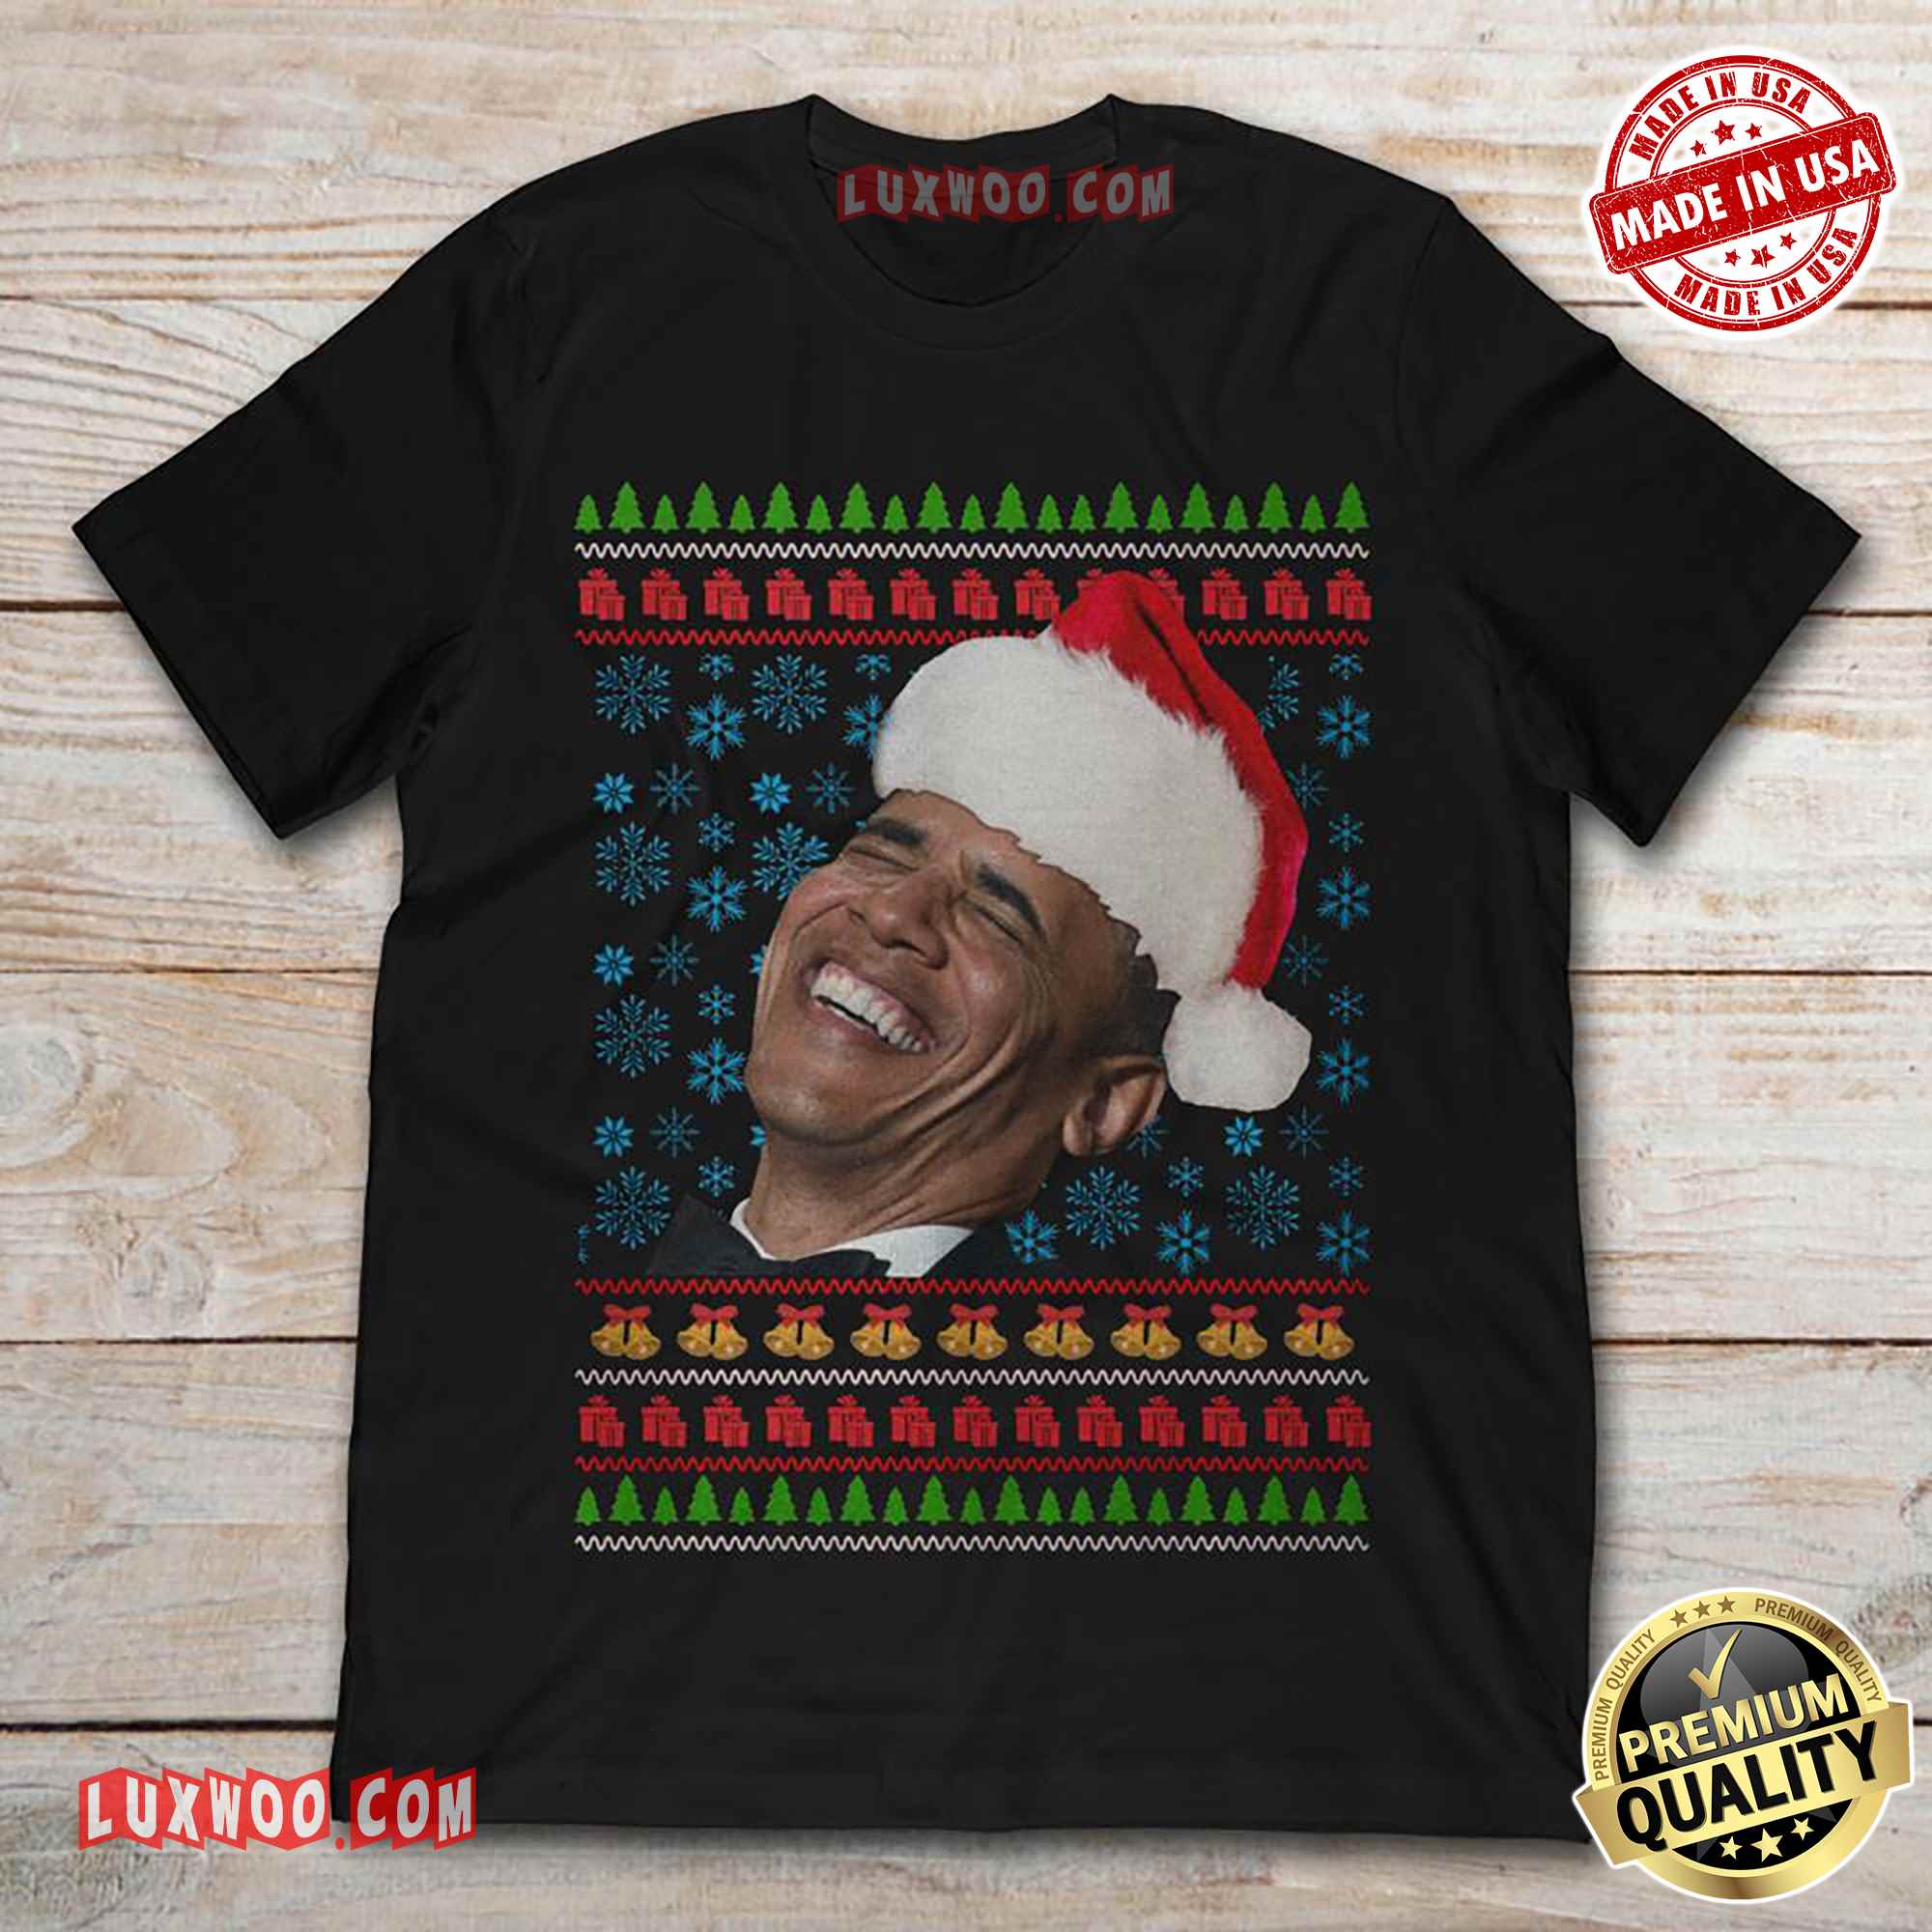 Barack Obama Christmas Tee Shirt